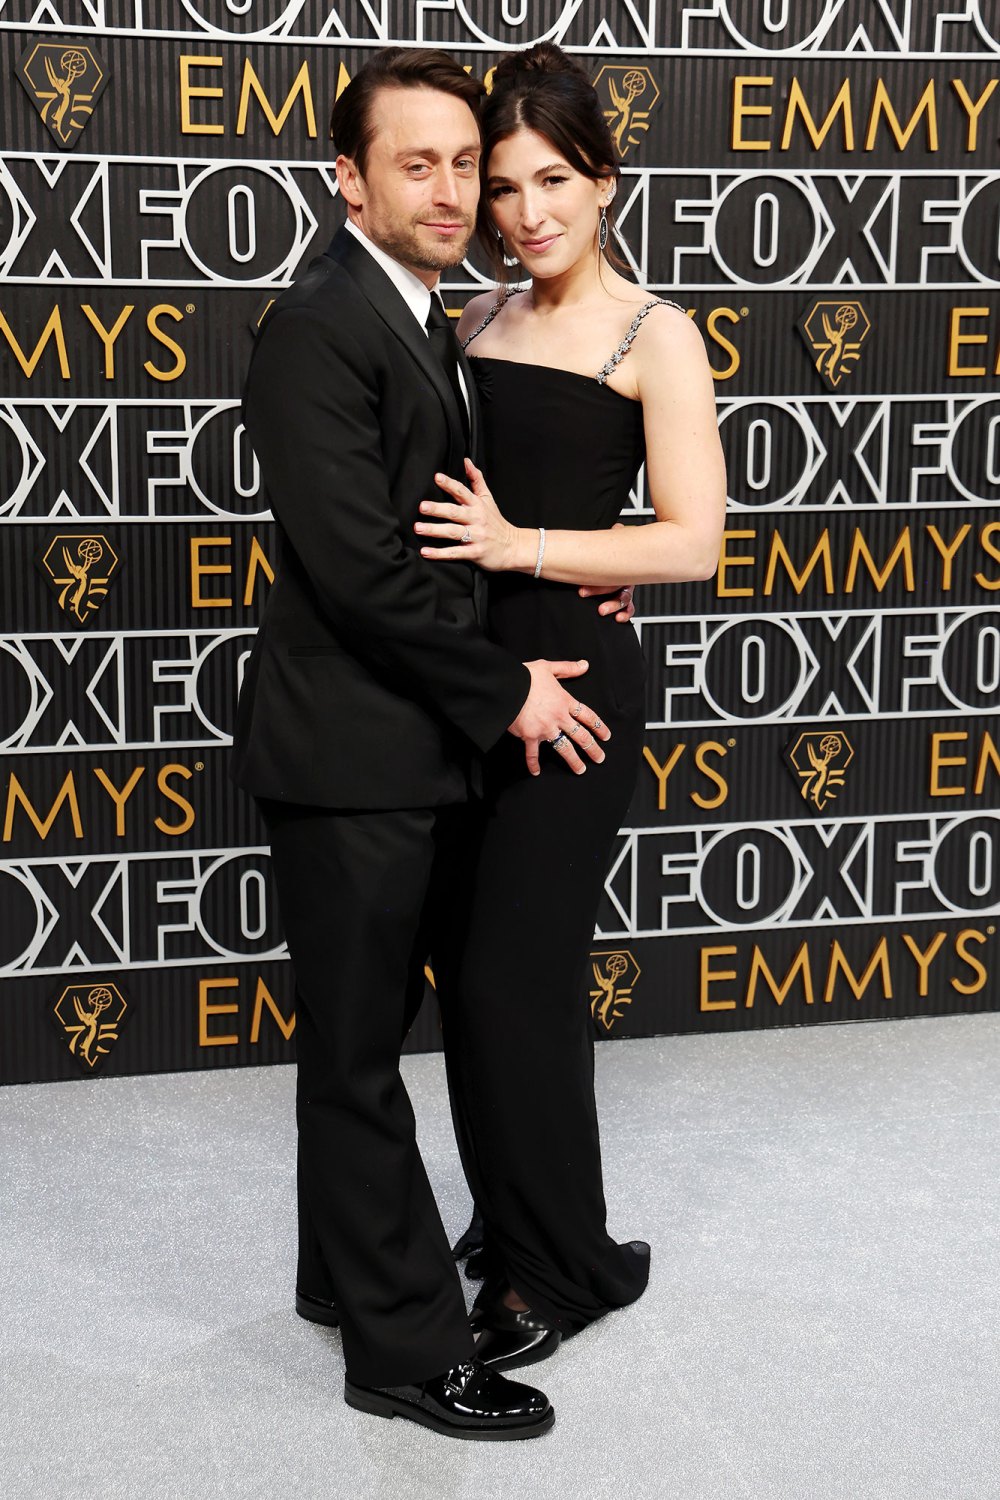 Feature Kieran Culkin Tells Wife Jazz Charton He Wants More Kids After Emmys Win 2023 Emmy Awards